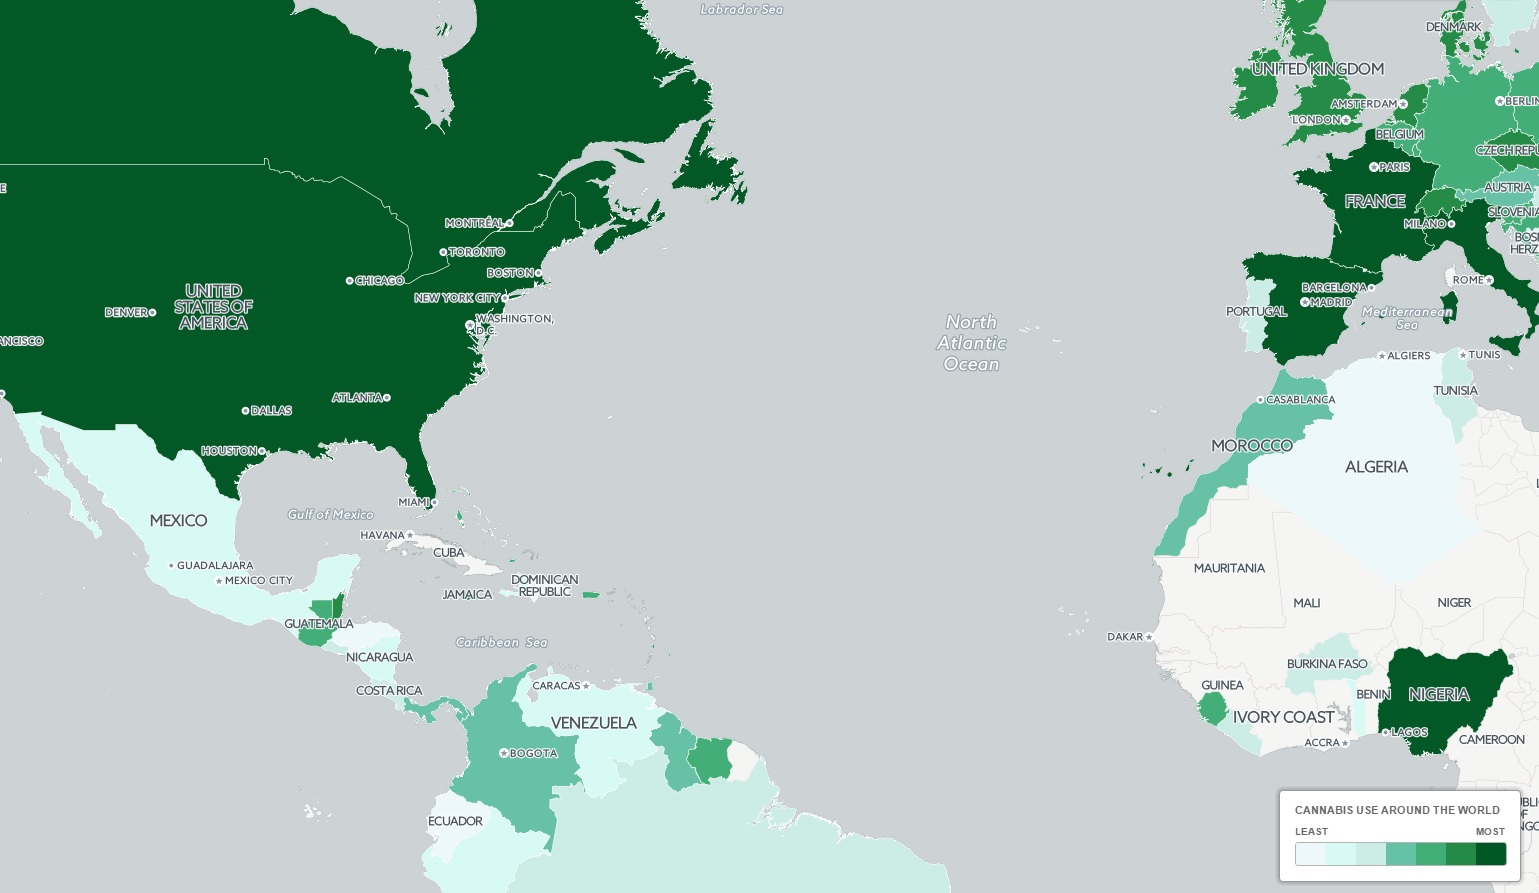 Ez a térkép megmutatja, hol füveznek legtöbbet a világon